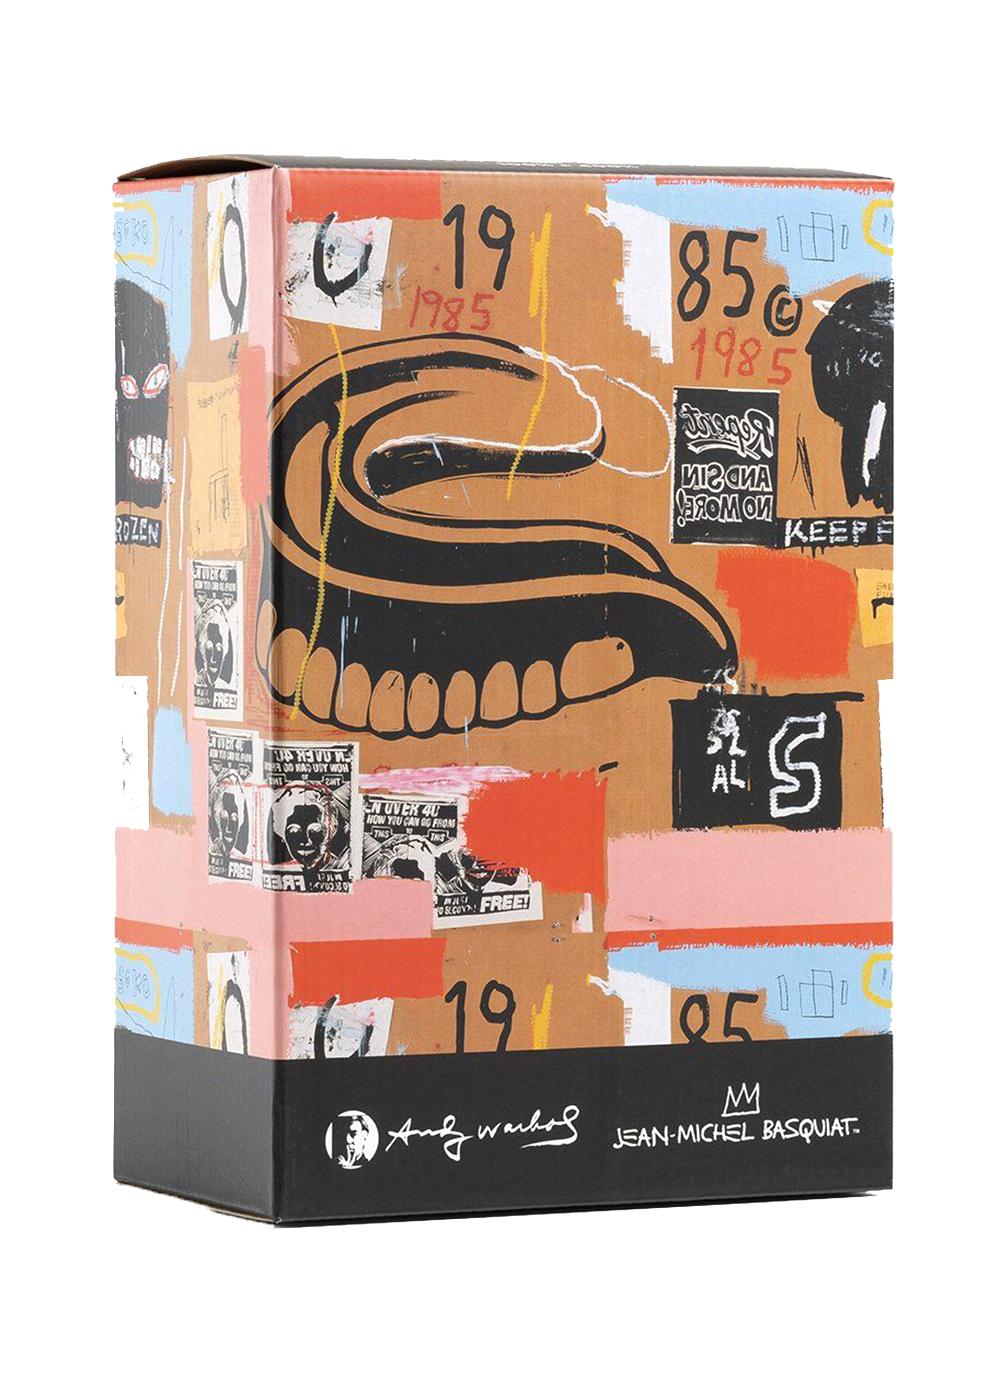 Andy Warhol, Jean-Michel Basquiat Bearbrick Vinyl Figur: (1000%) 
Ein einzigartiges, zeitloses Sammlerstück, geschützt und lizenziert durch den Nachlass von Jean-Michel Basquiat und Andy Warhol. Das gemeinsame Sammlerstück zeigt Details aus